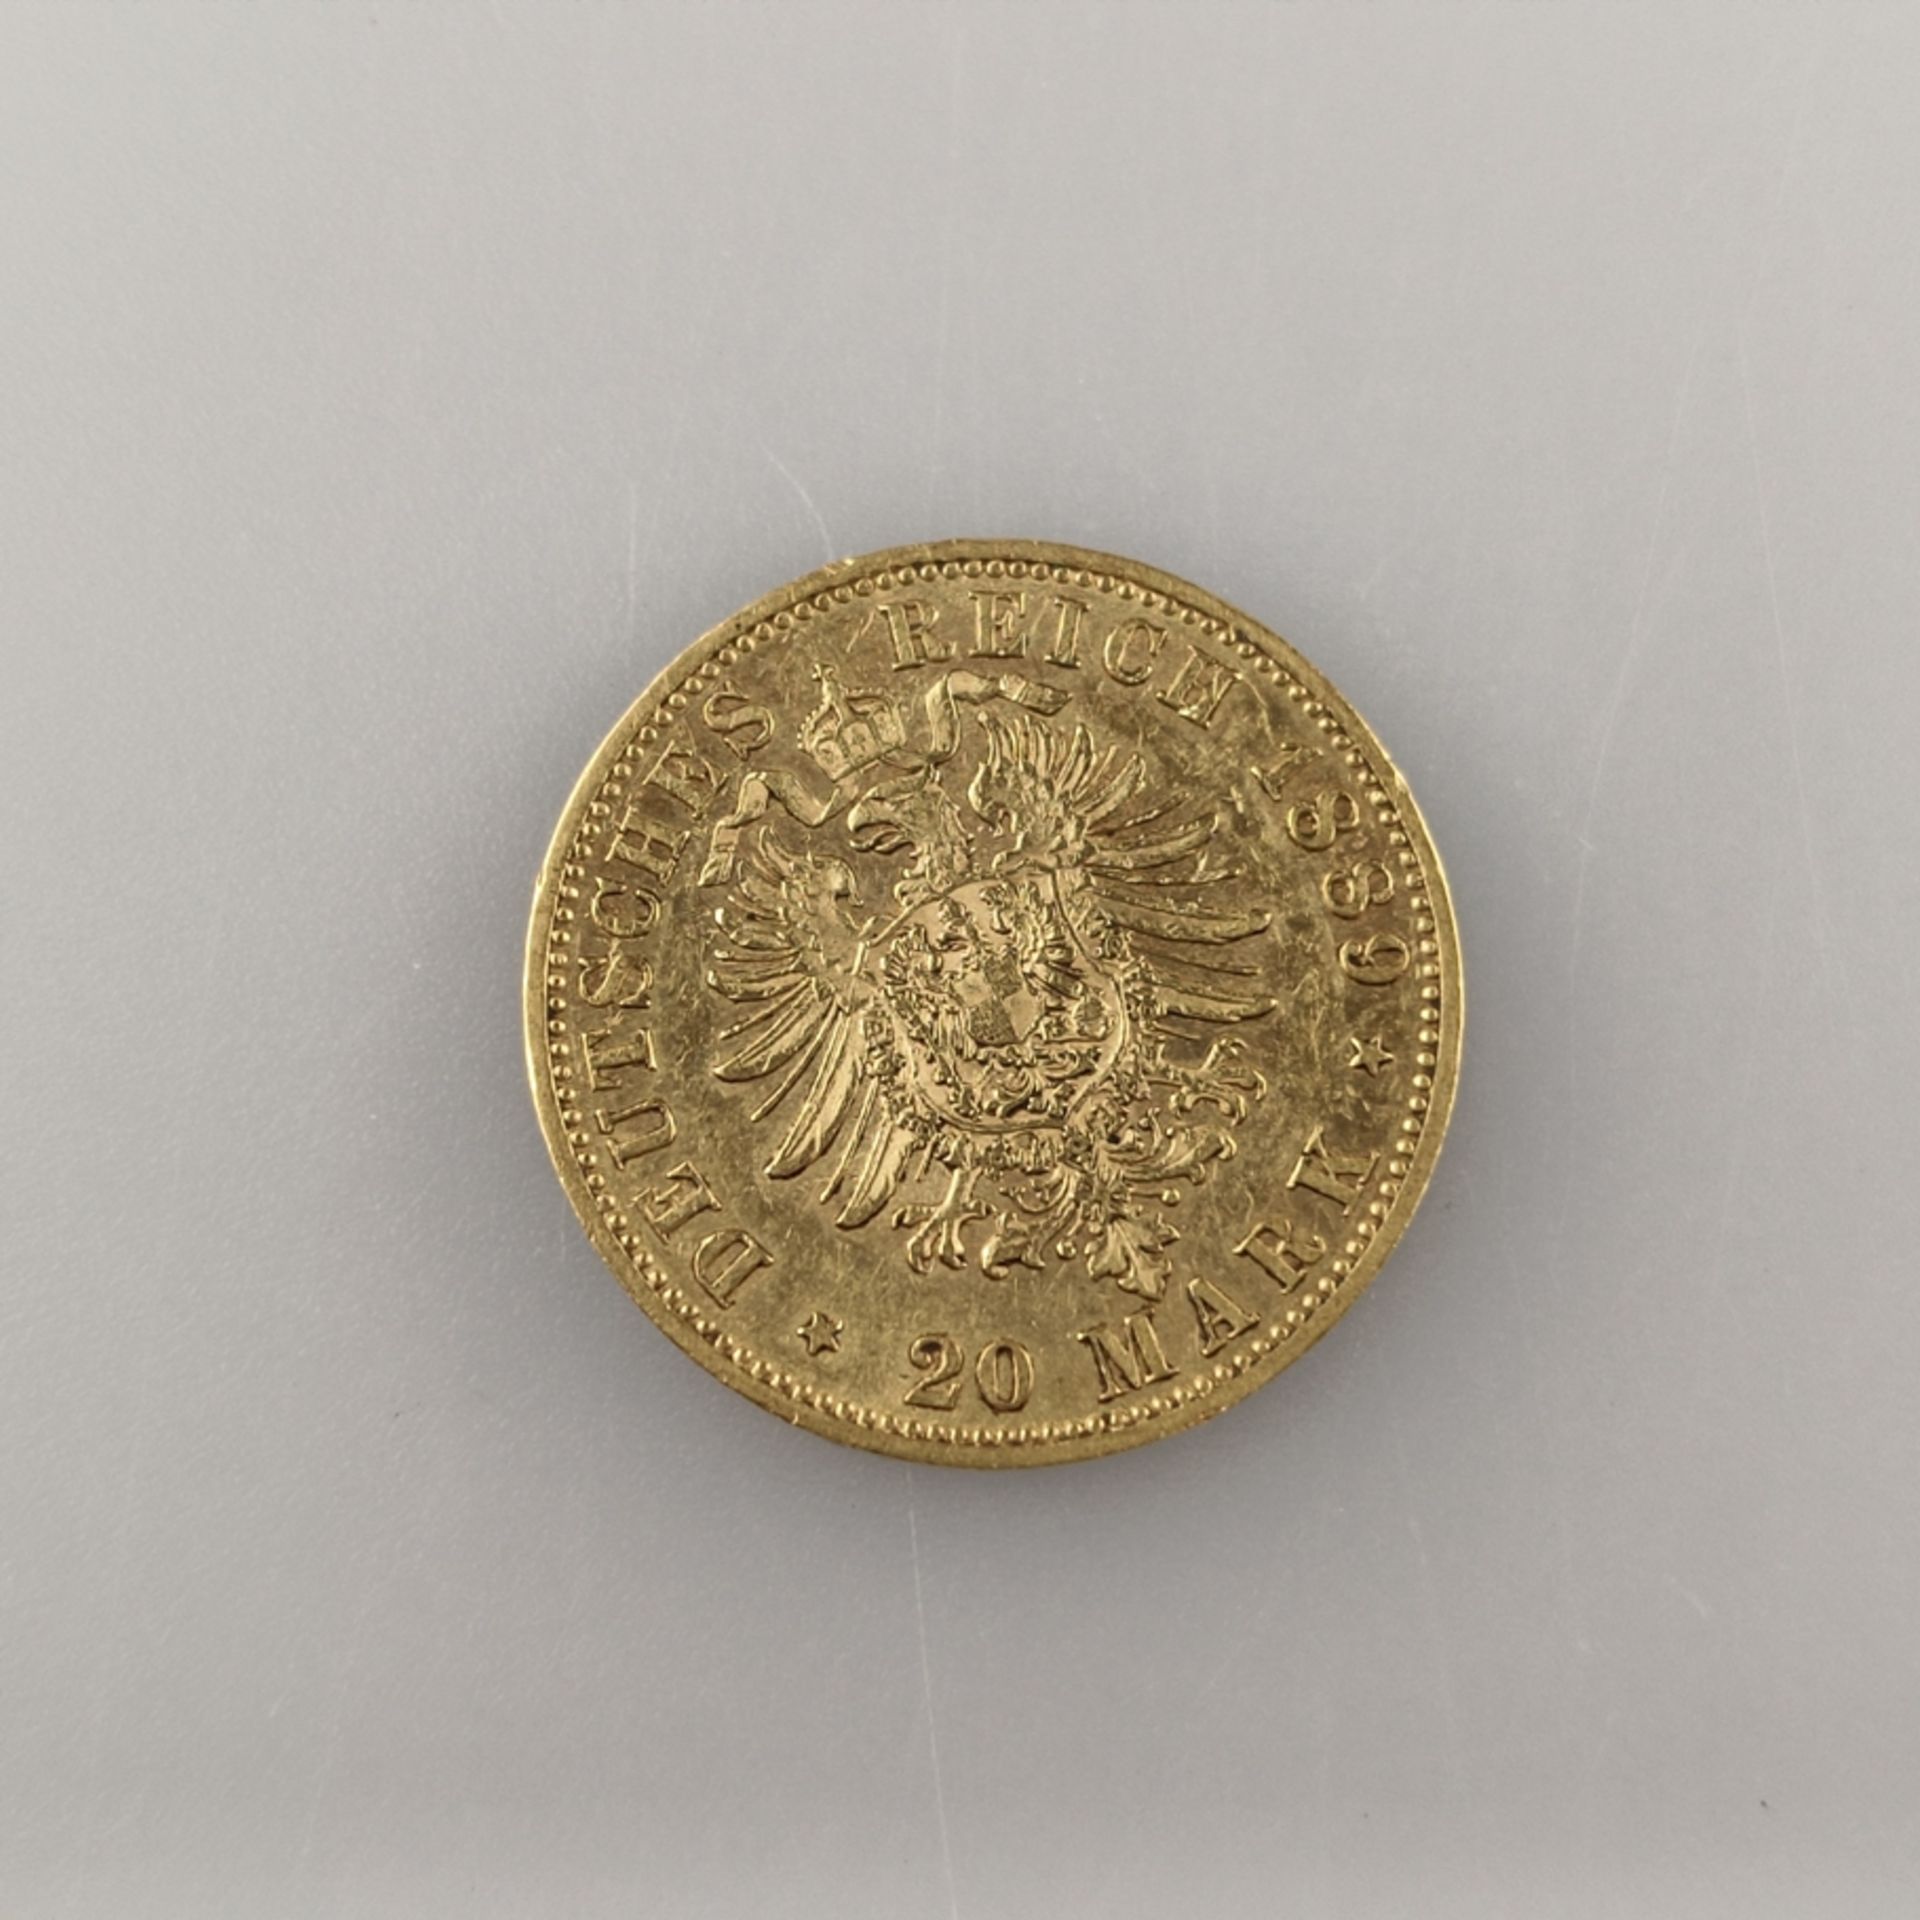 Goldmünze 20 Mark 1889 - Deutsches Kaiserreich, Wilhelm II Deutscher Kaiser König v. Preußen, 900/0 - Bild 2 aus 2